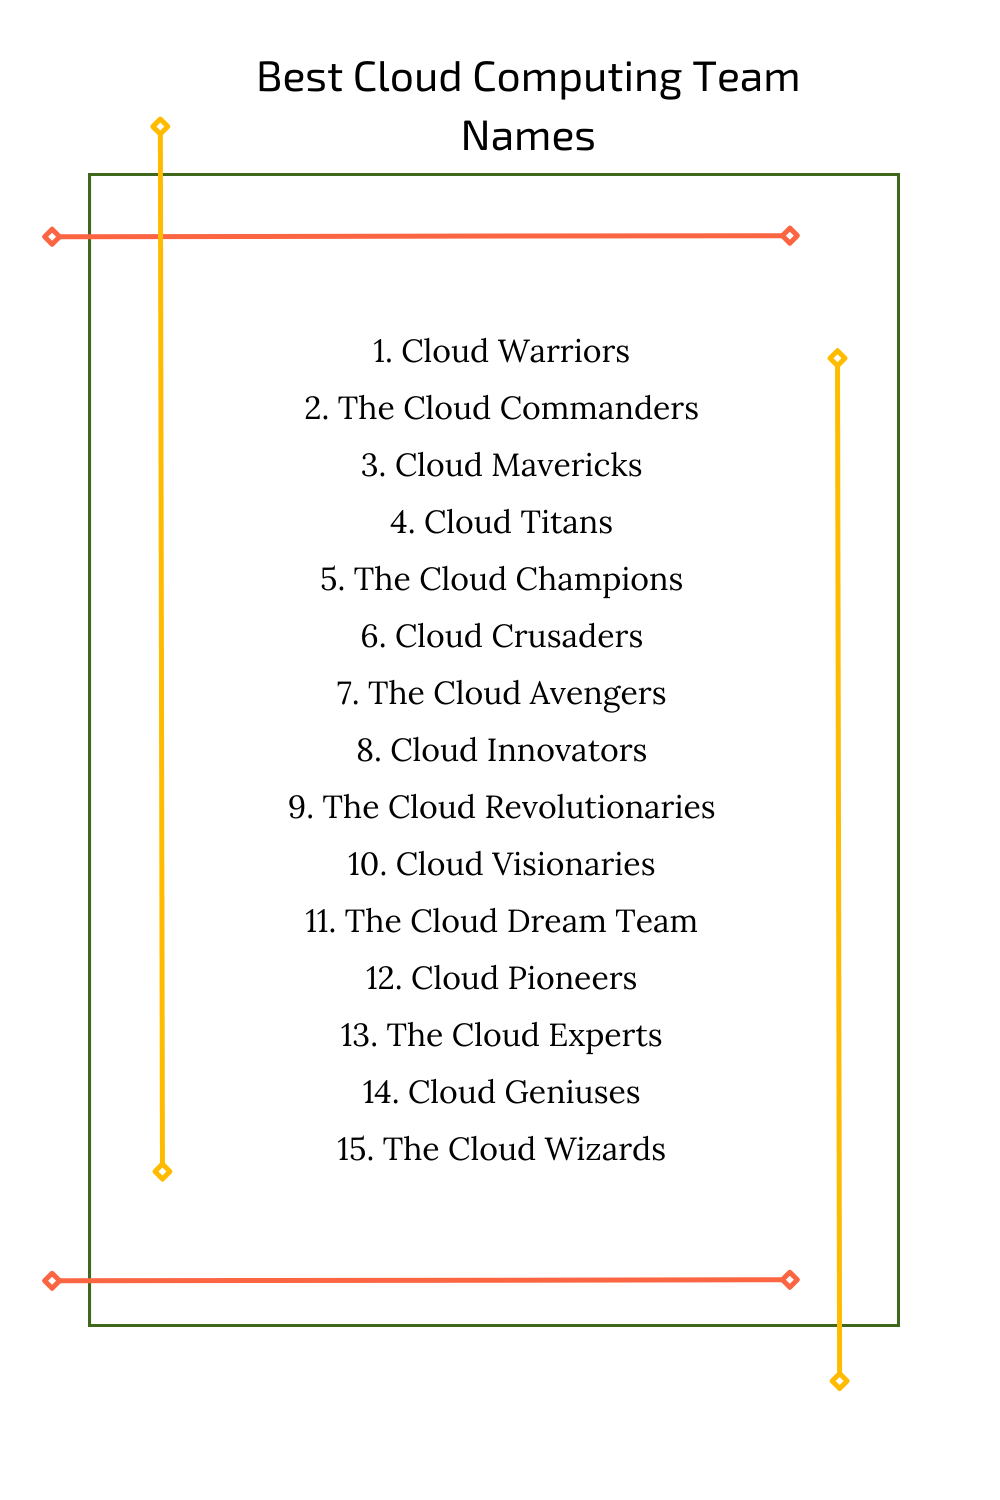 Best Cloud Computing Team Names